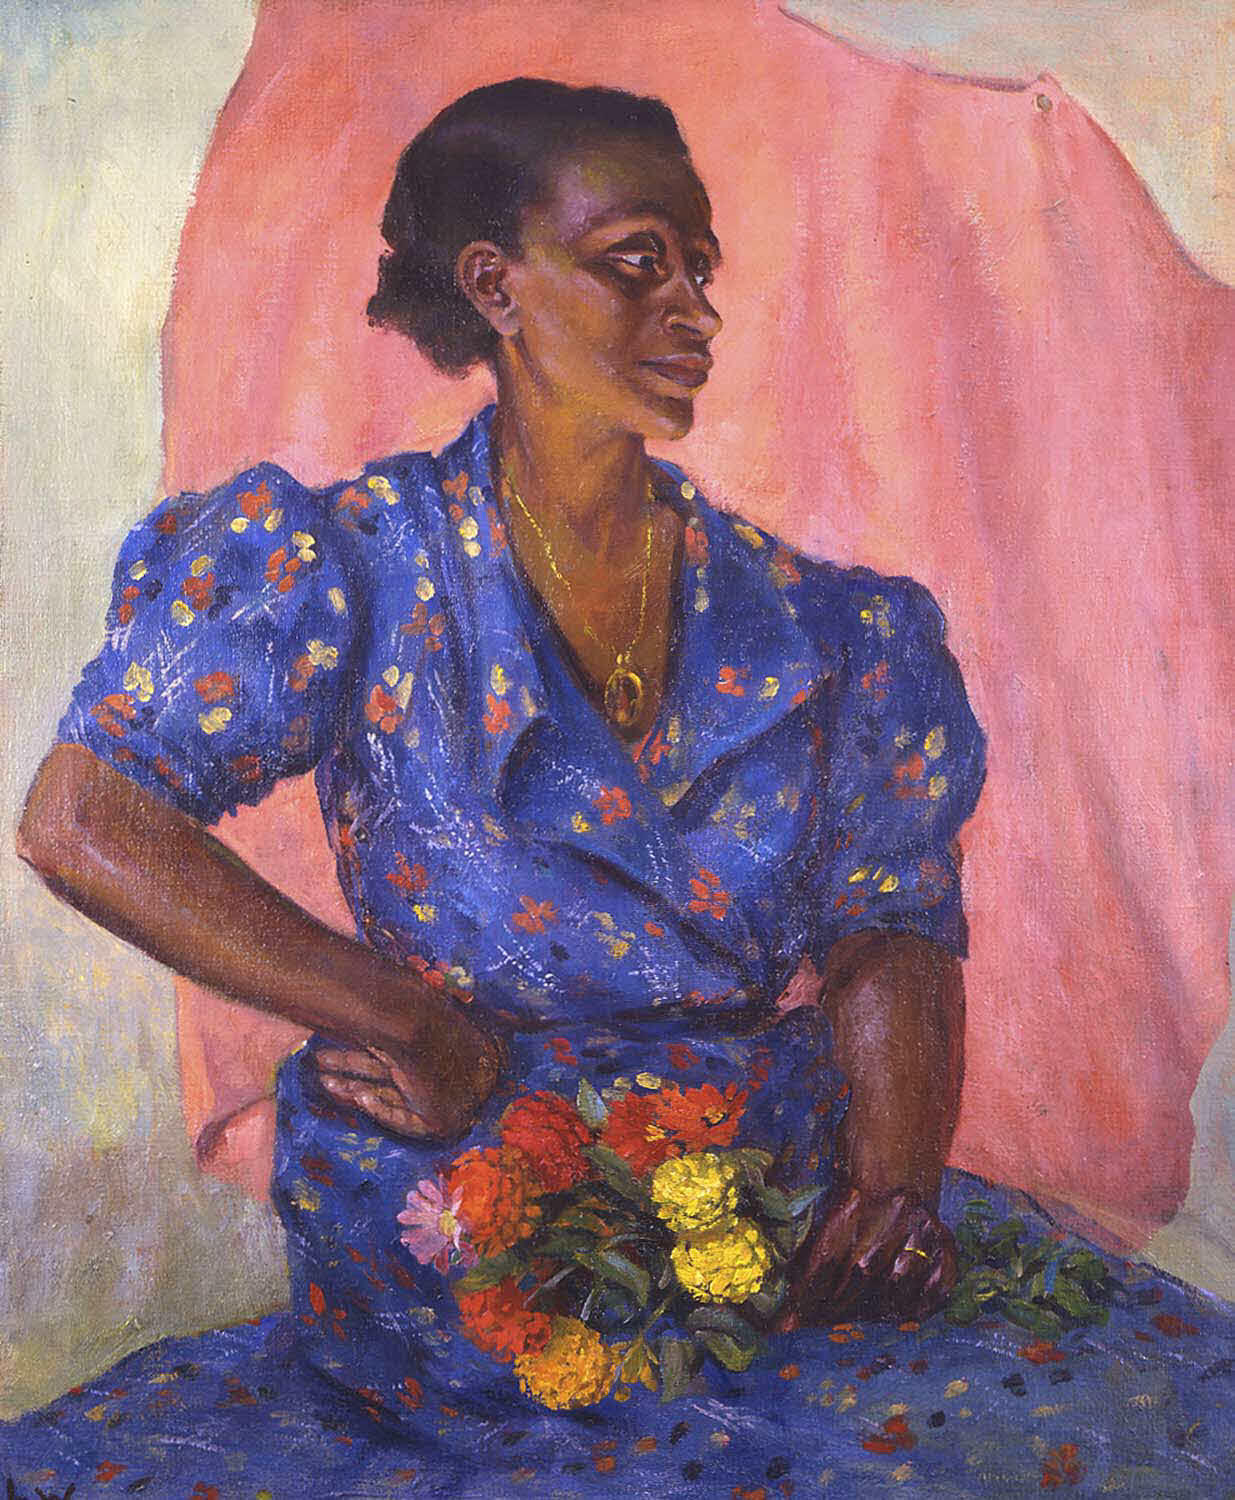 花束を持つ女性 by Laura Wheeler Waring - 1940年頃 - 76.2 x 63.5 cm 